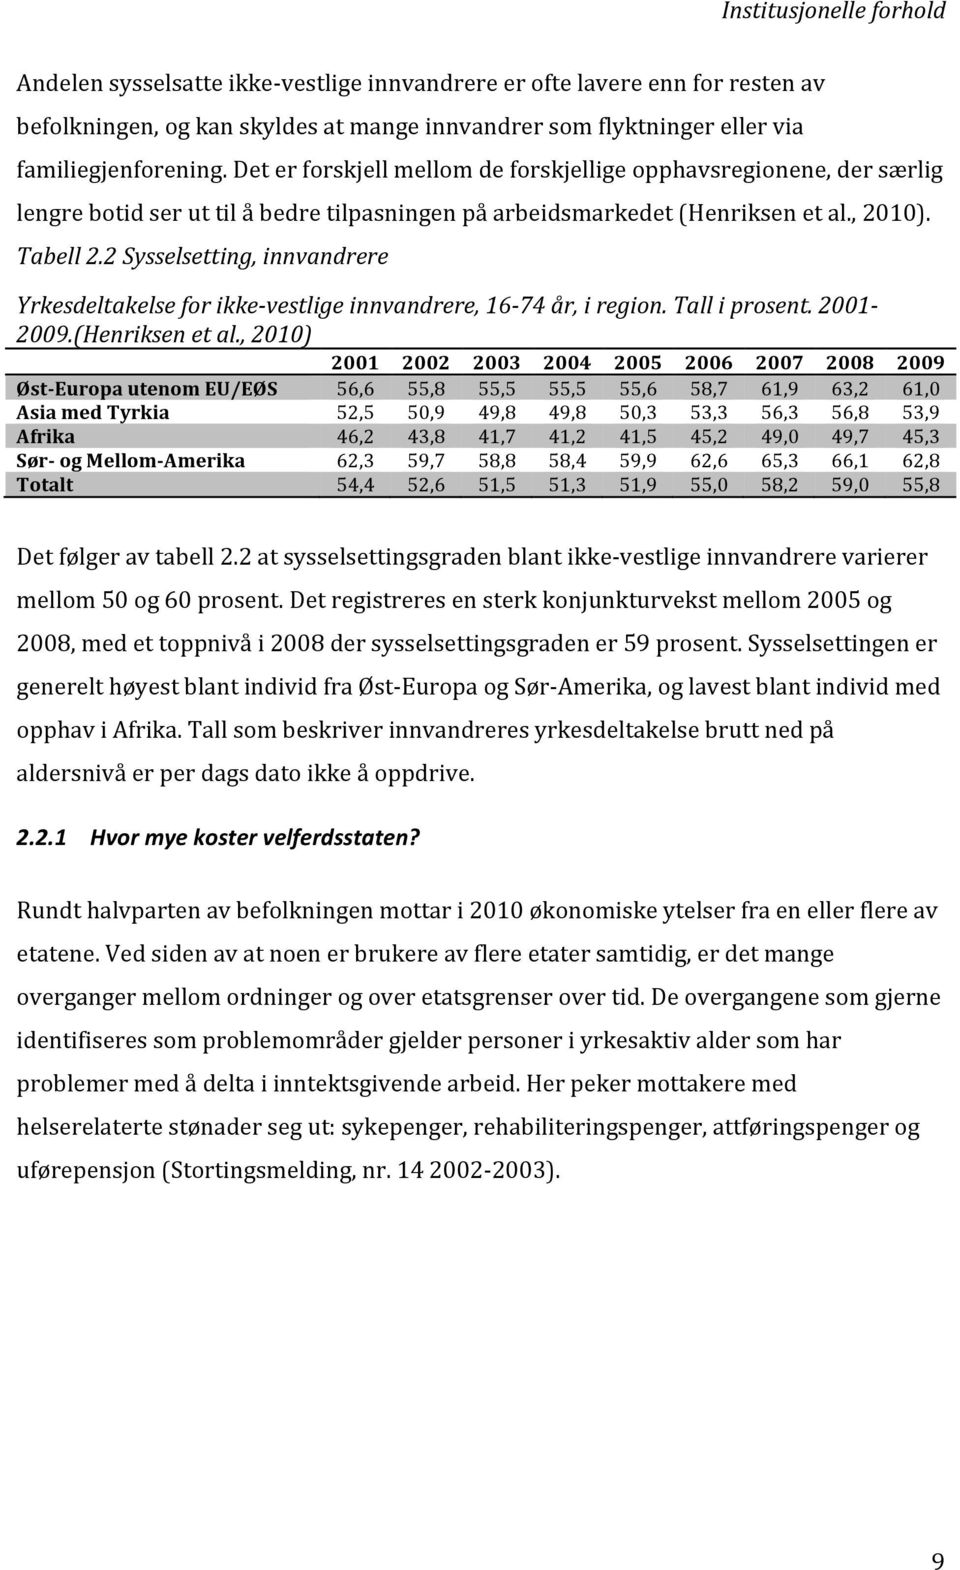 2 Sysselsetting, innvandrere Yrkesdeltakelse for ikke- vestlige innvandrere, 16-74 år, i region. Tall i prosent. 2001-2009.(Henriksen et al.